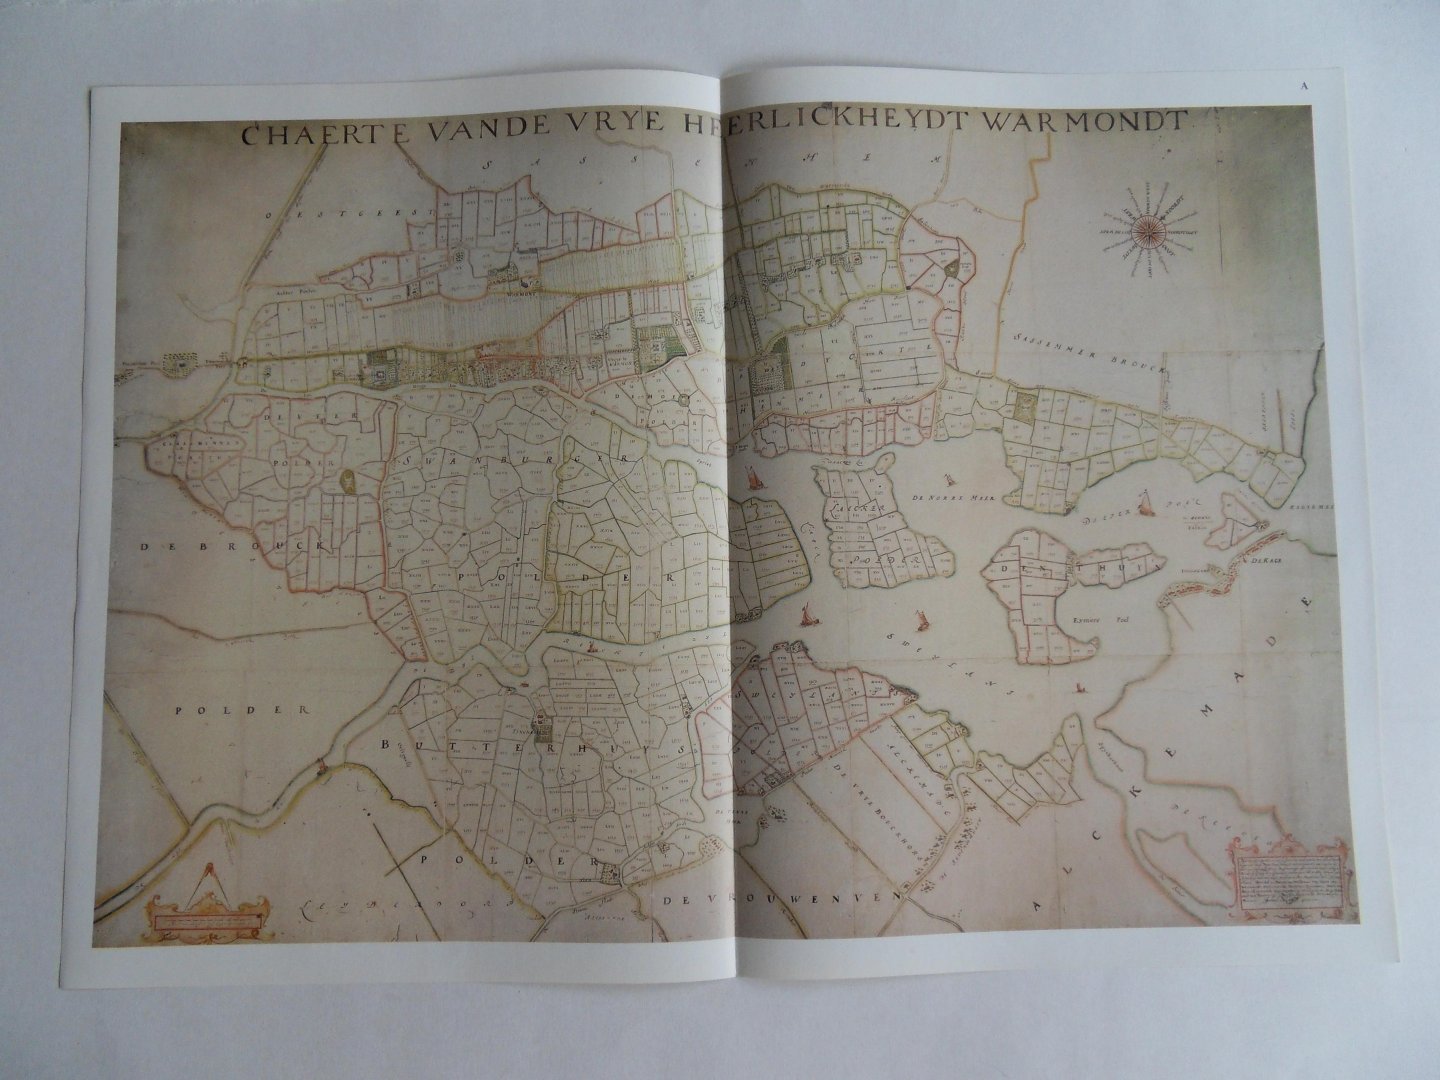 Steur, A.G. van der [ uitgegeven en voorzien van een inleiding door ]. - Chaerte van de Vrye Heerlickheydt Warmondt - een pre-kadastrale kaart uit 1667 vervaardigd door Johan Dou(w). [ Beperkte oplage ].